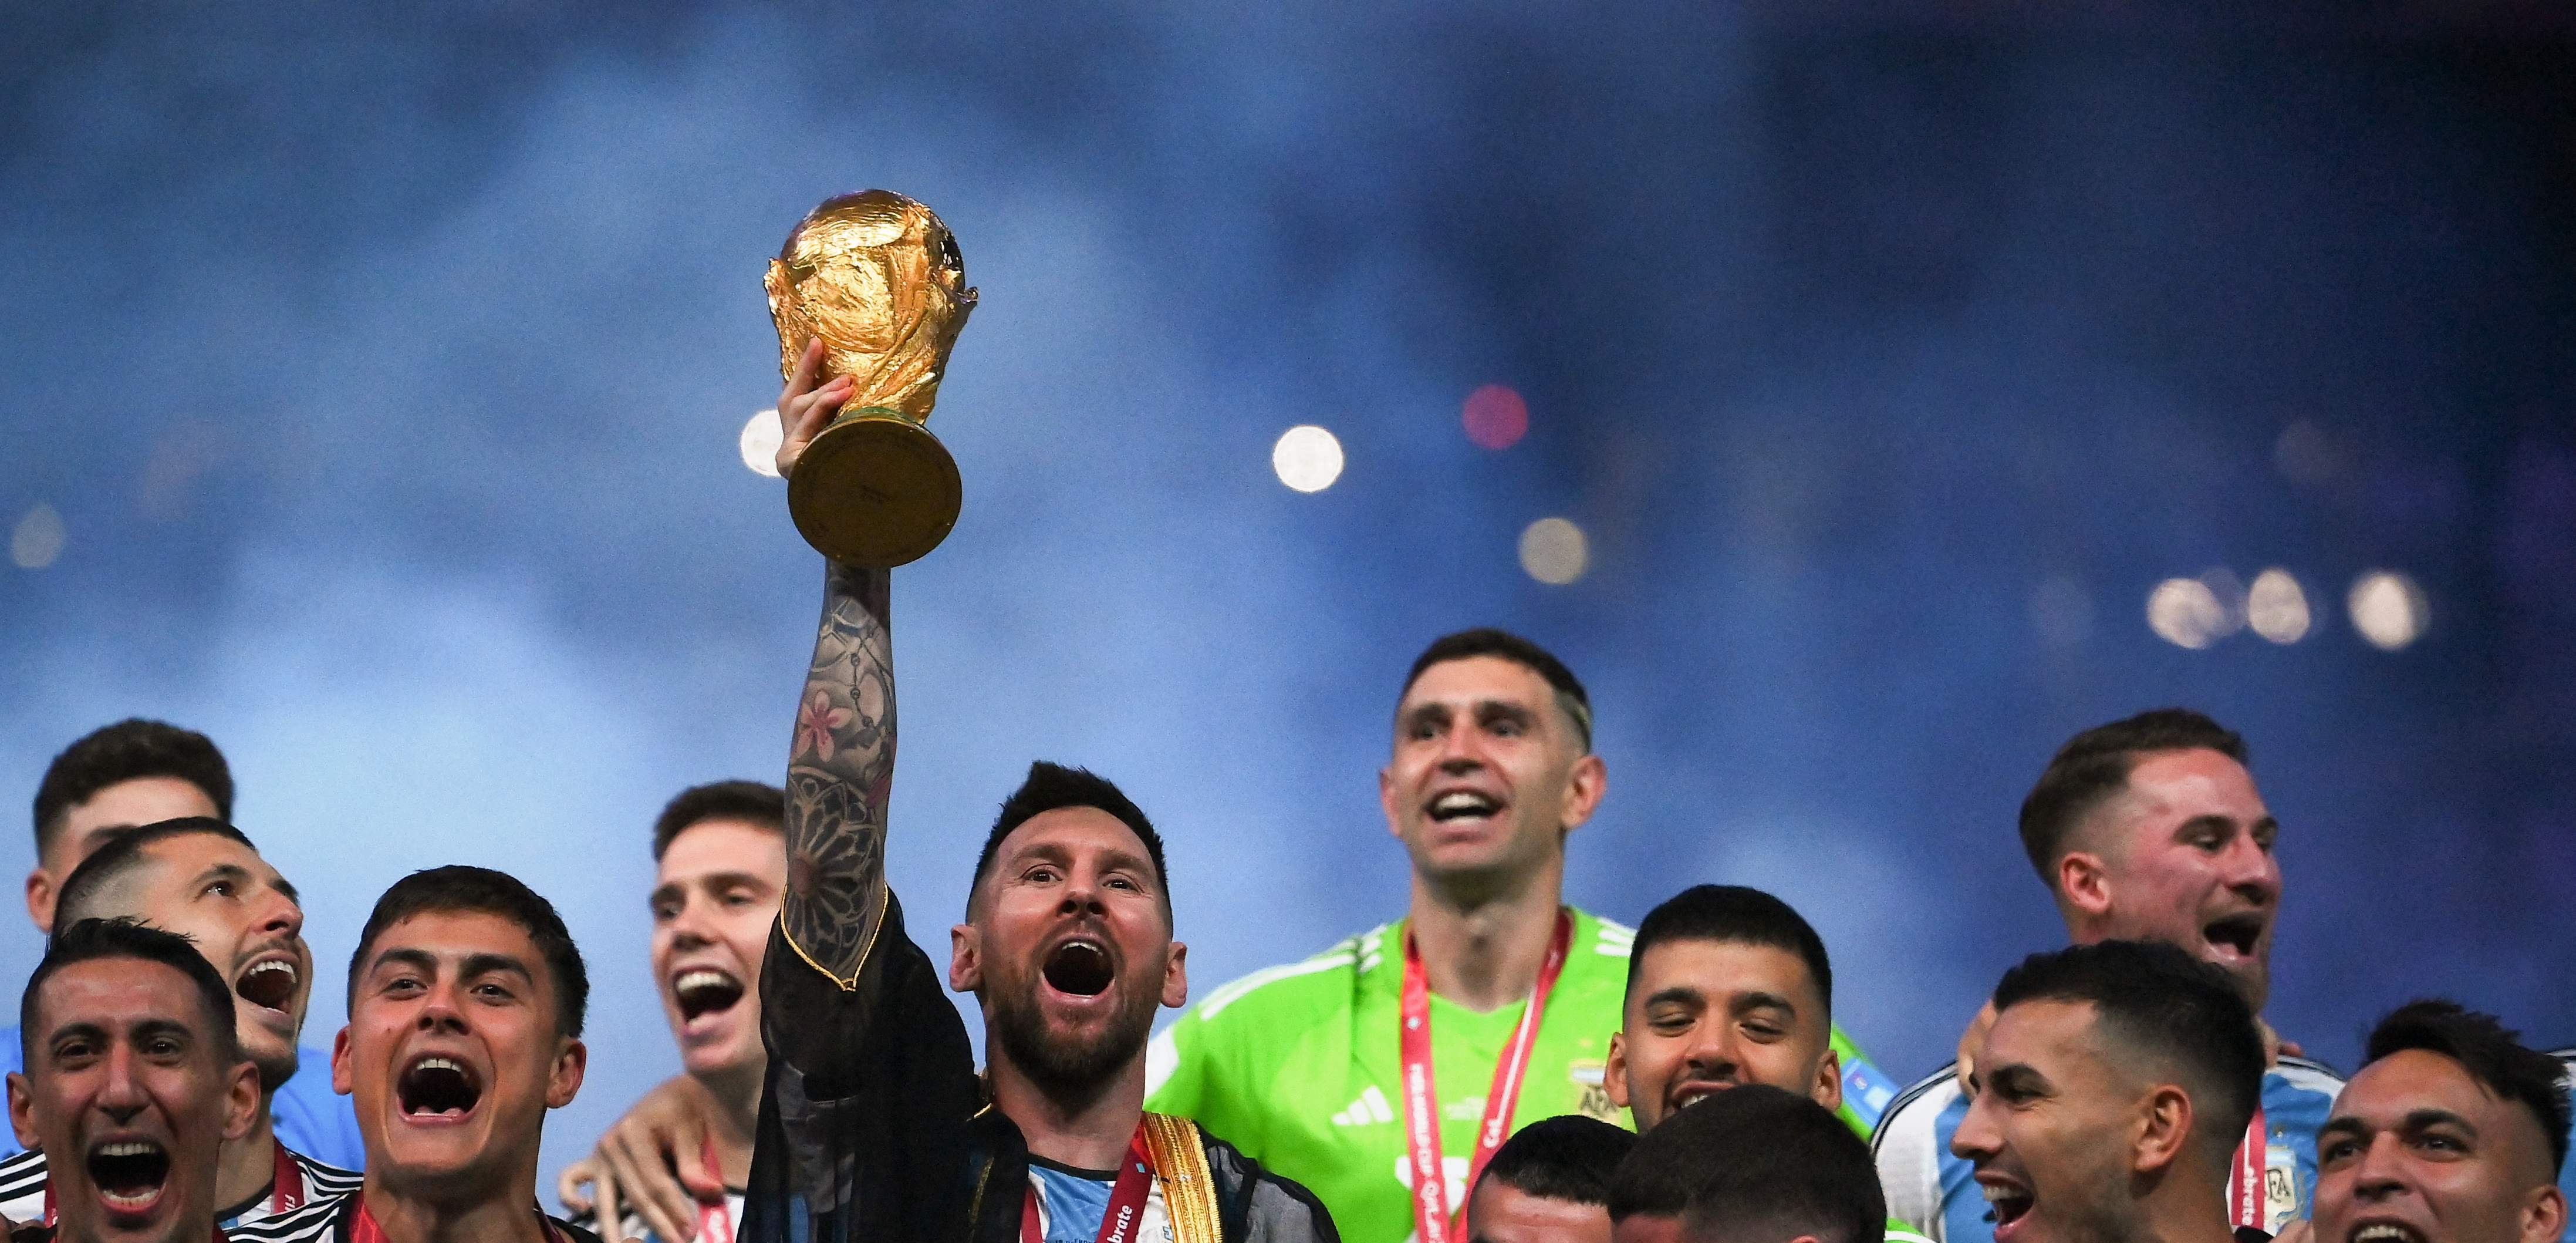 El argentino se coronó campeón del mundo en diciembre pasado, derrotando en los penaltis a Francia. (Foto Prensa Libre: AFP)